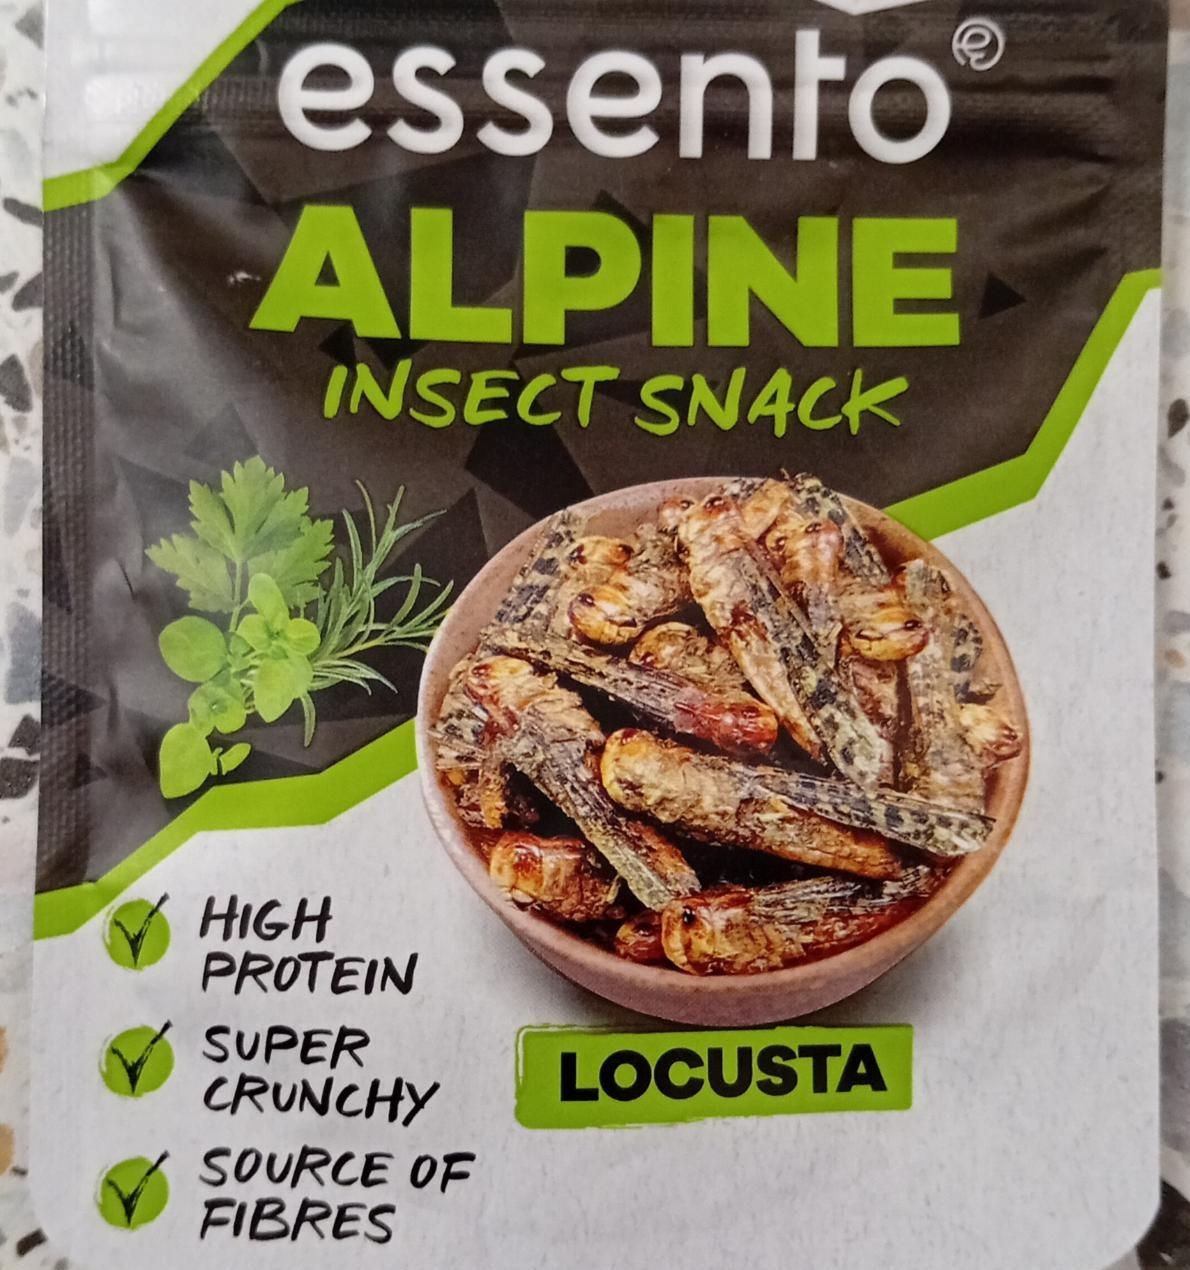 Fotografie - Alpine insect snack Locusta essento